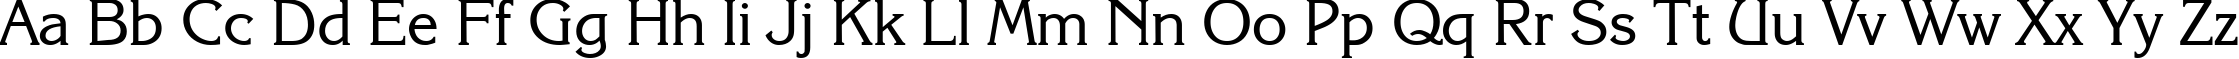 Пример написания английского алфавита шрифтом Coriolan